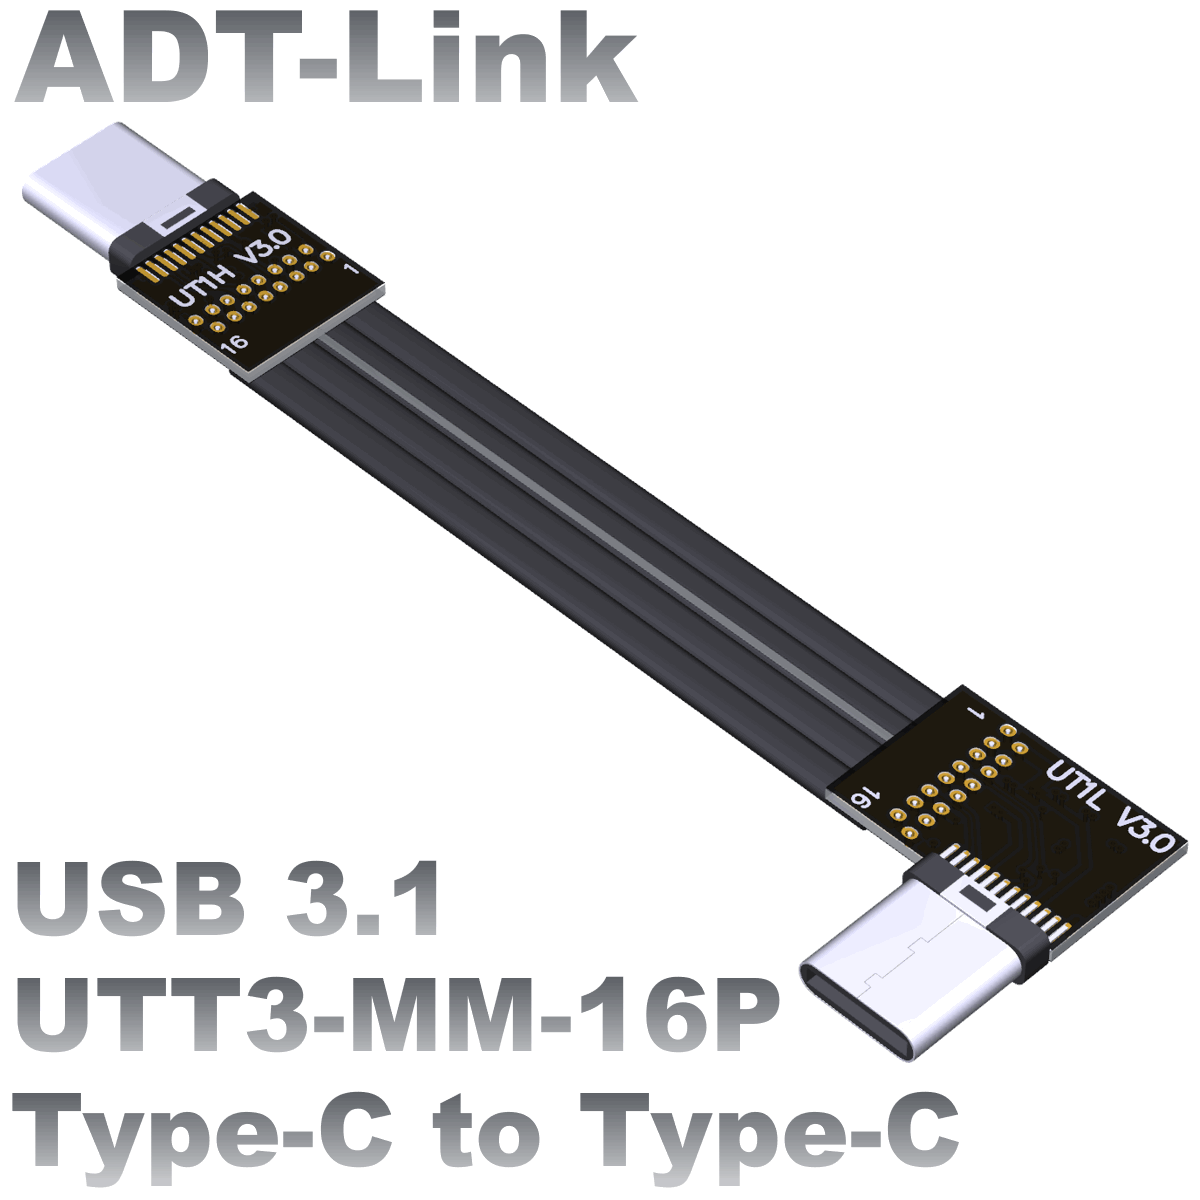 UTT3-MM-16P series